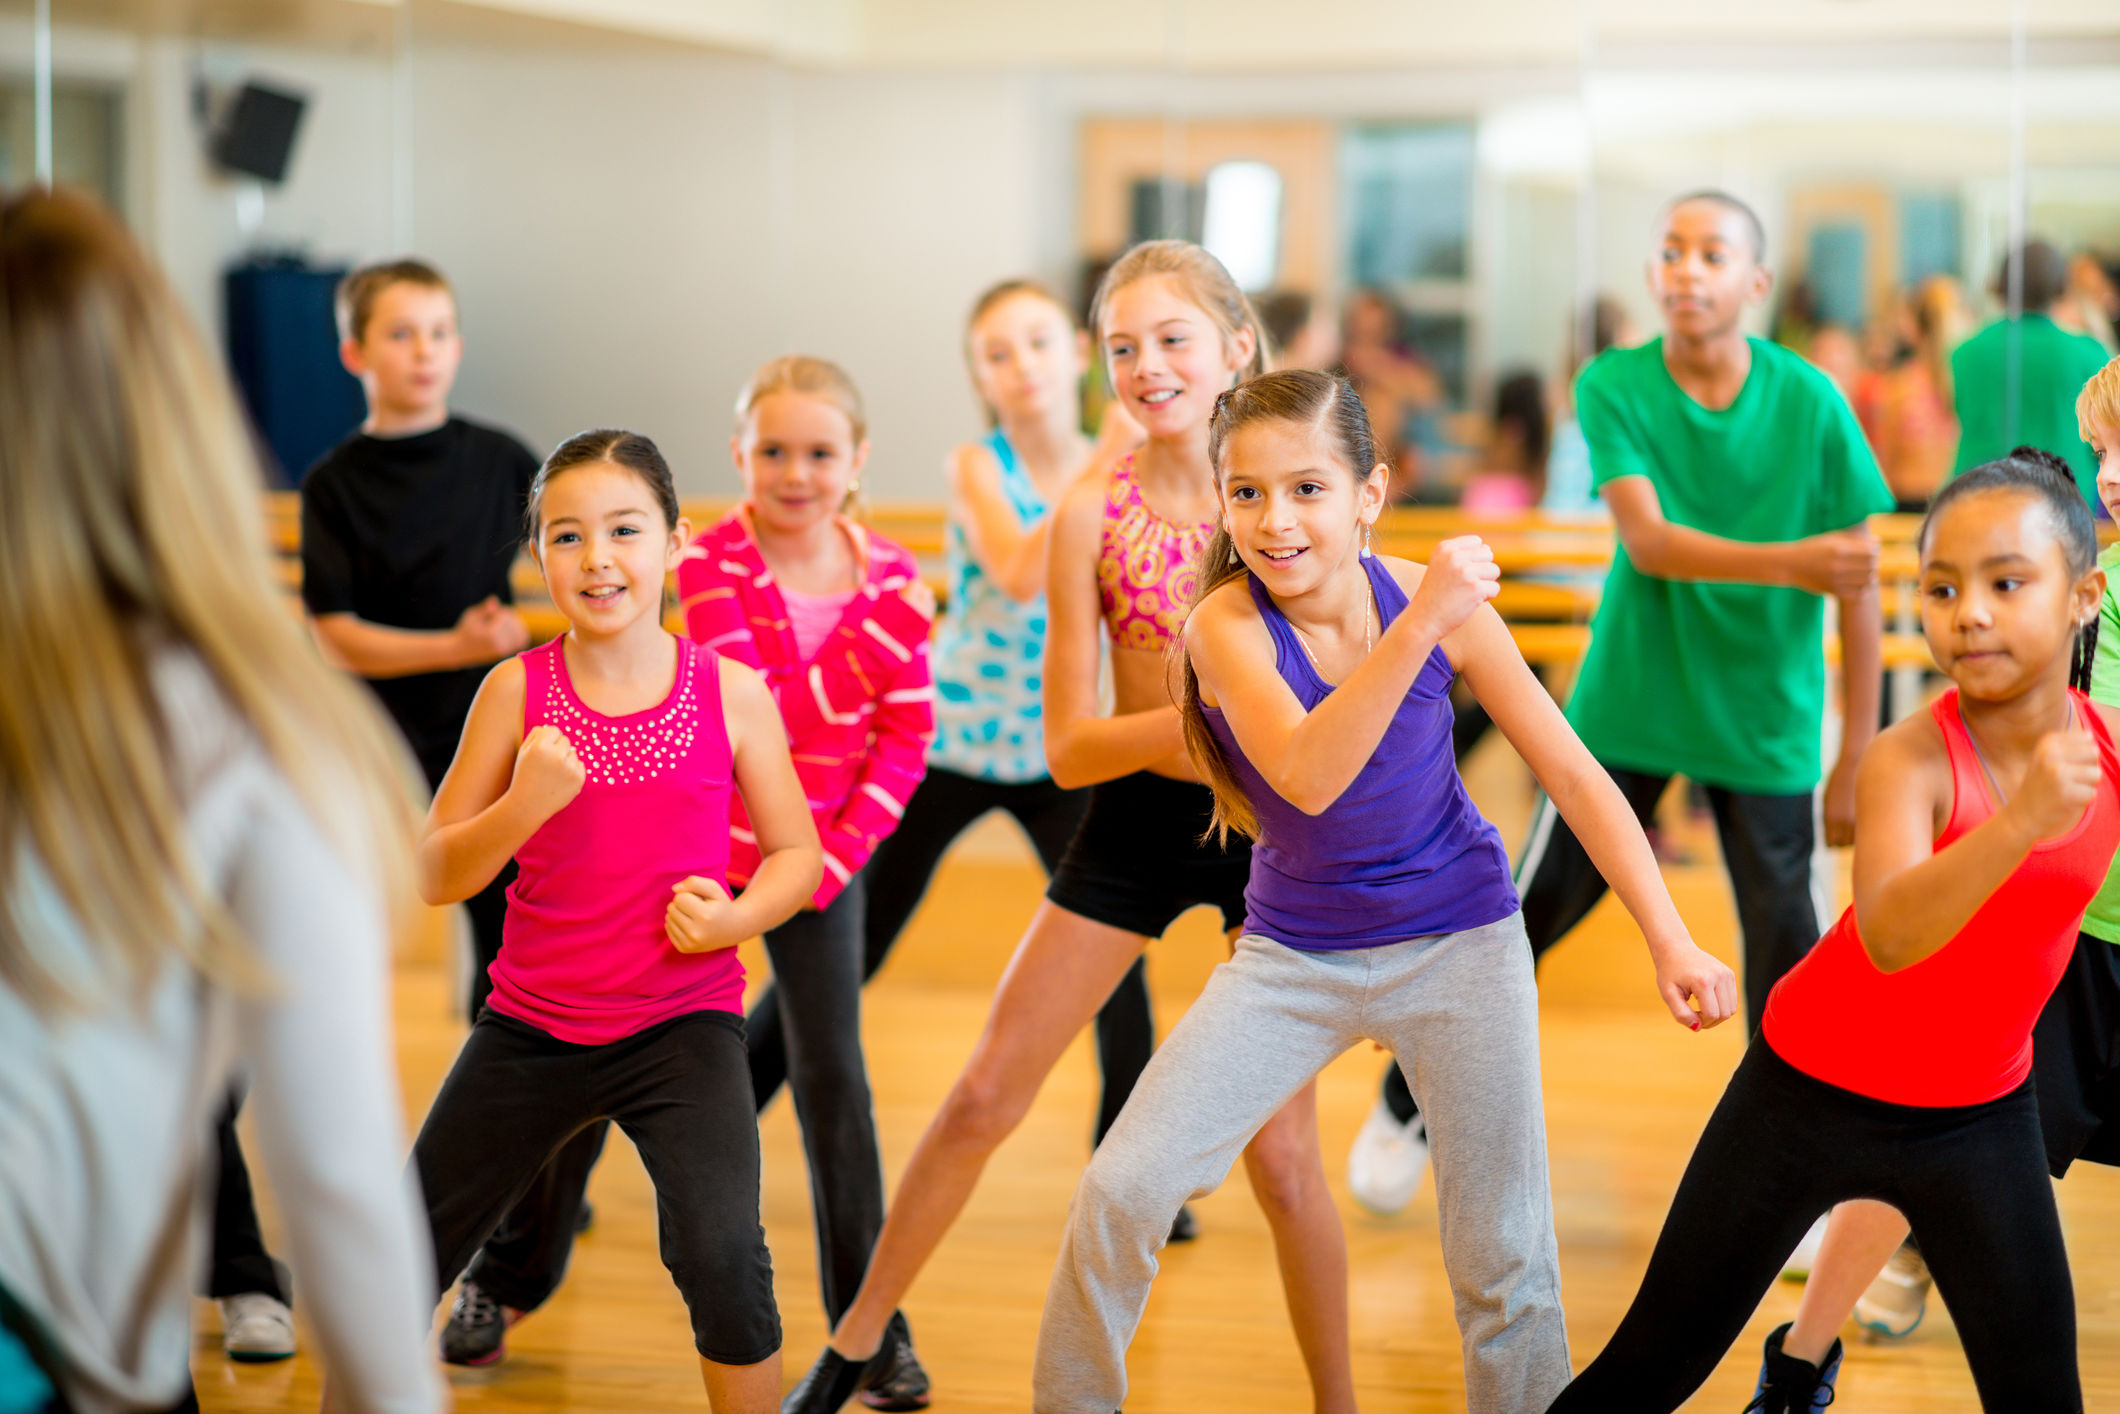 Dance exercise. Оздоровительная аэробика для детей. Детский фитнес. Фитнес аэробика для детей. Спортивные занятия для детей.